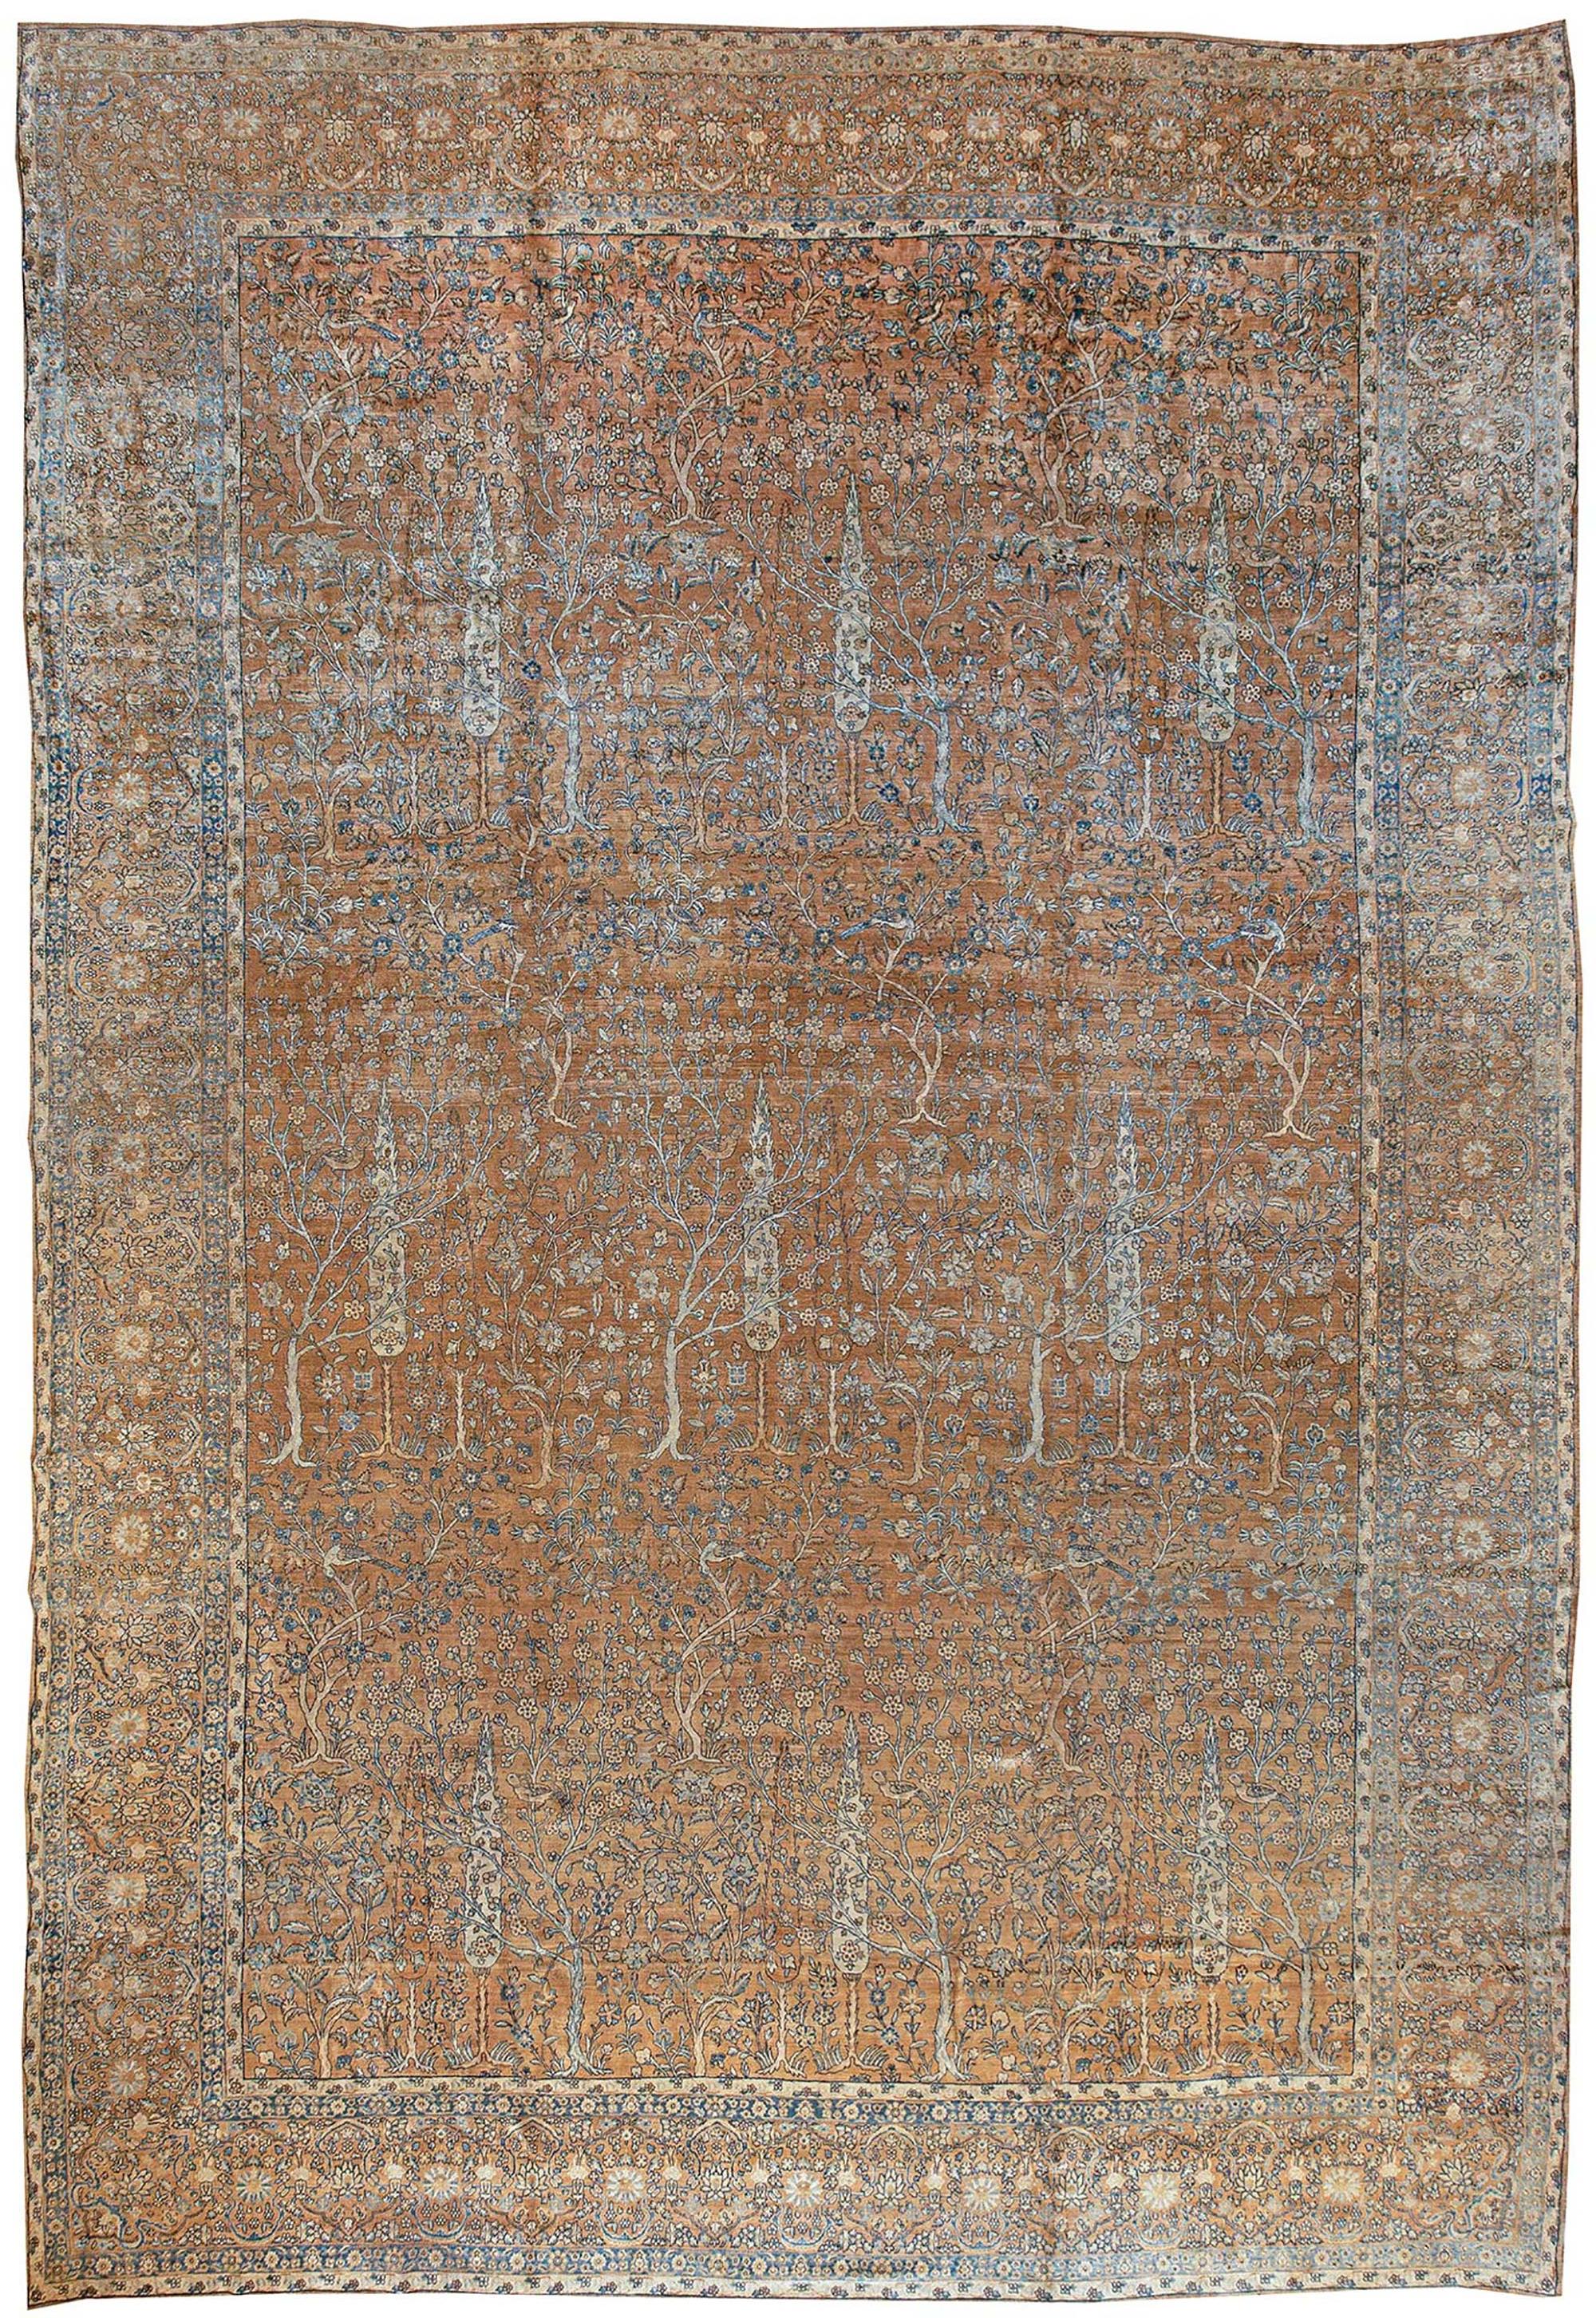 Grand tapis ancien en laine de l'Inde du Nord, fait à la main, de couleur Brown